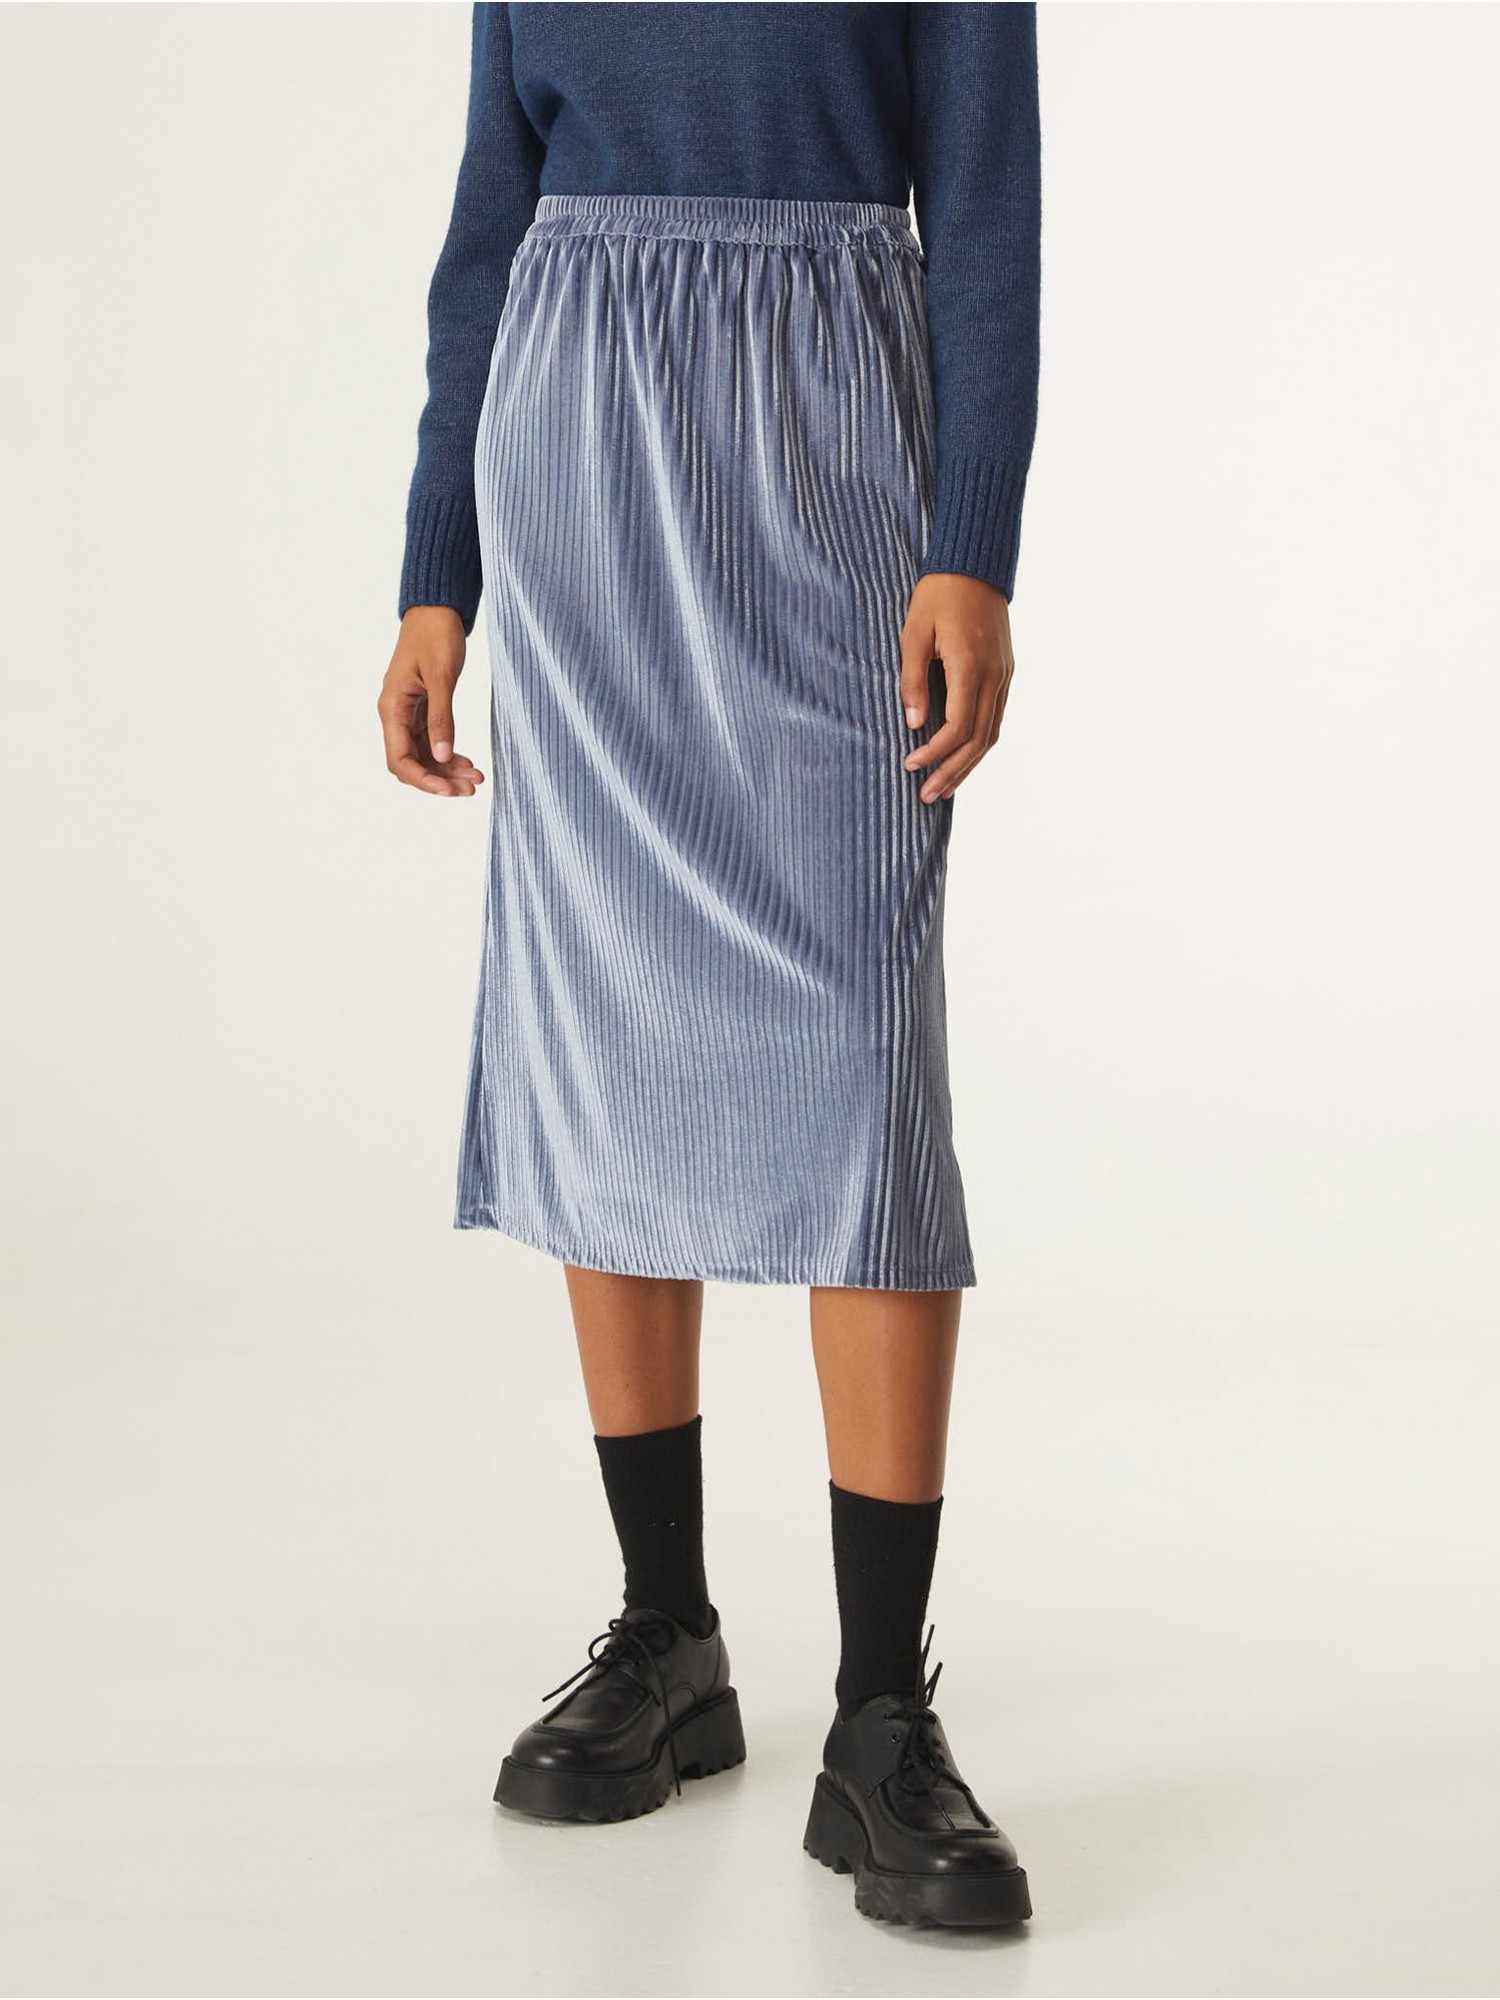 Falda midi Velvet Compañía Fantástica en candelascloset. Color azul de terciopelo rayado y cintura elástica para mujer.